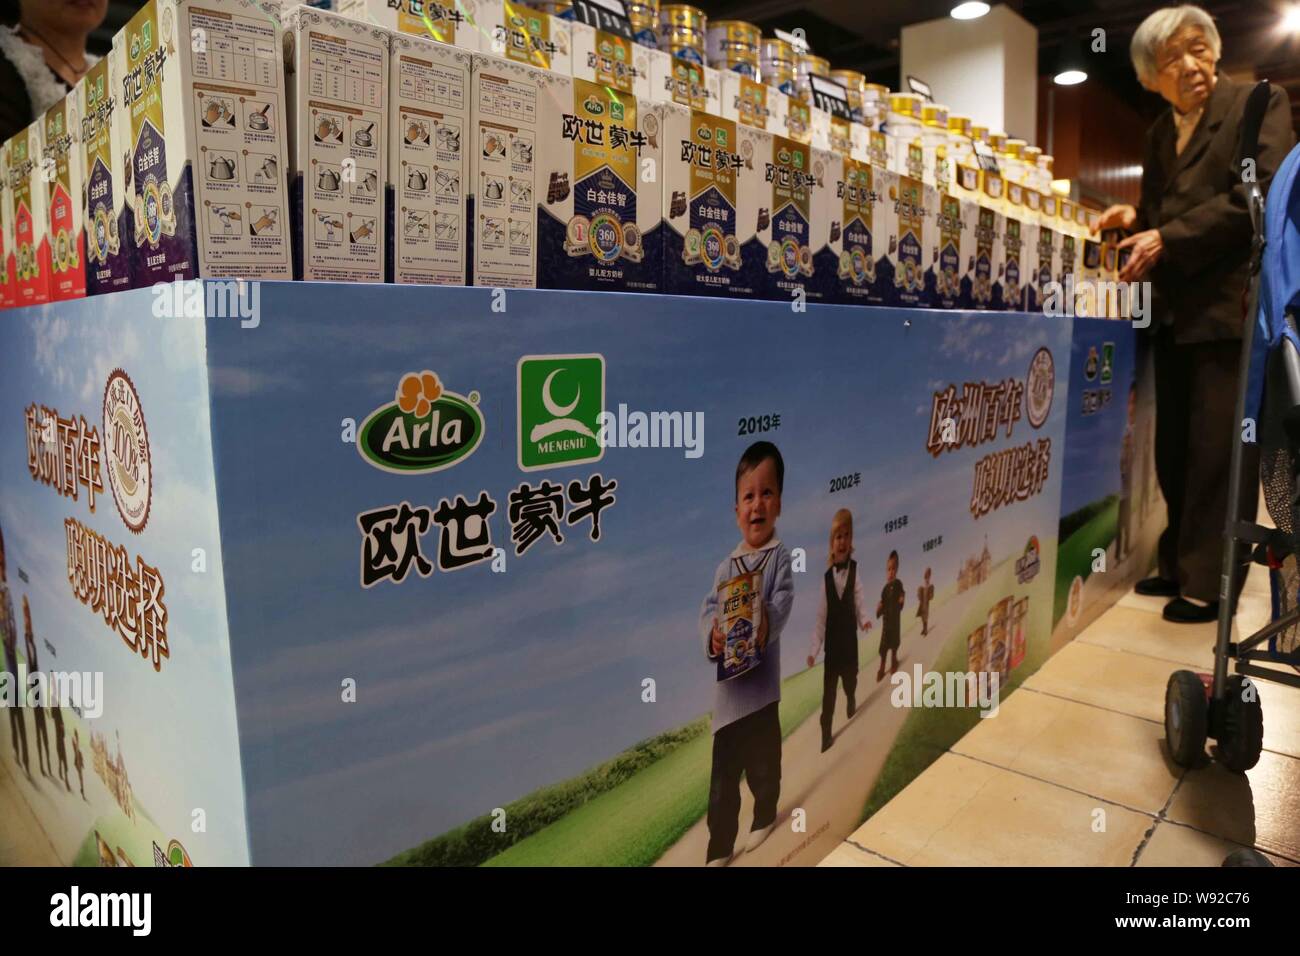 --FILE--A customer buys boxes of Mengniu Arla milk powder at a supermarket in Xuchang, central Chinas Henan province, 5 October 2013.   China Mengniu Stock Photo